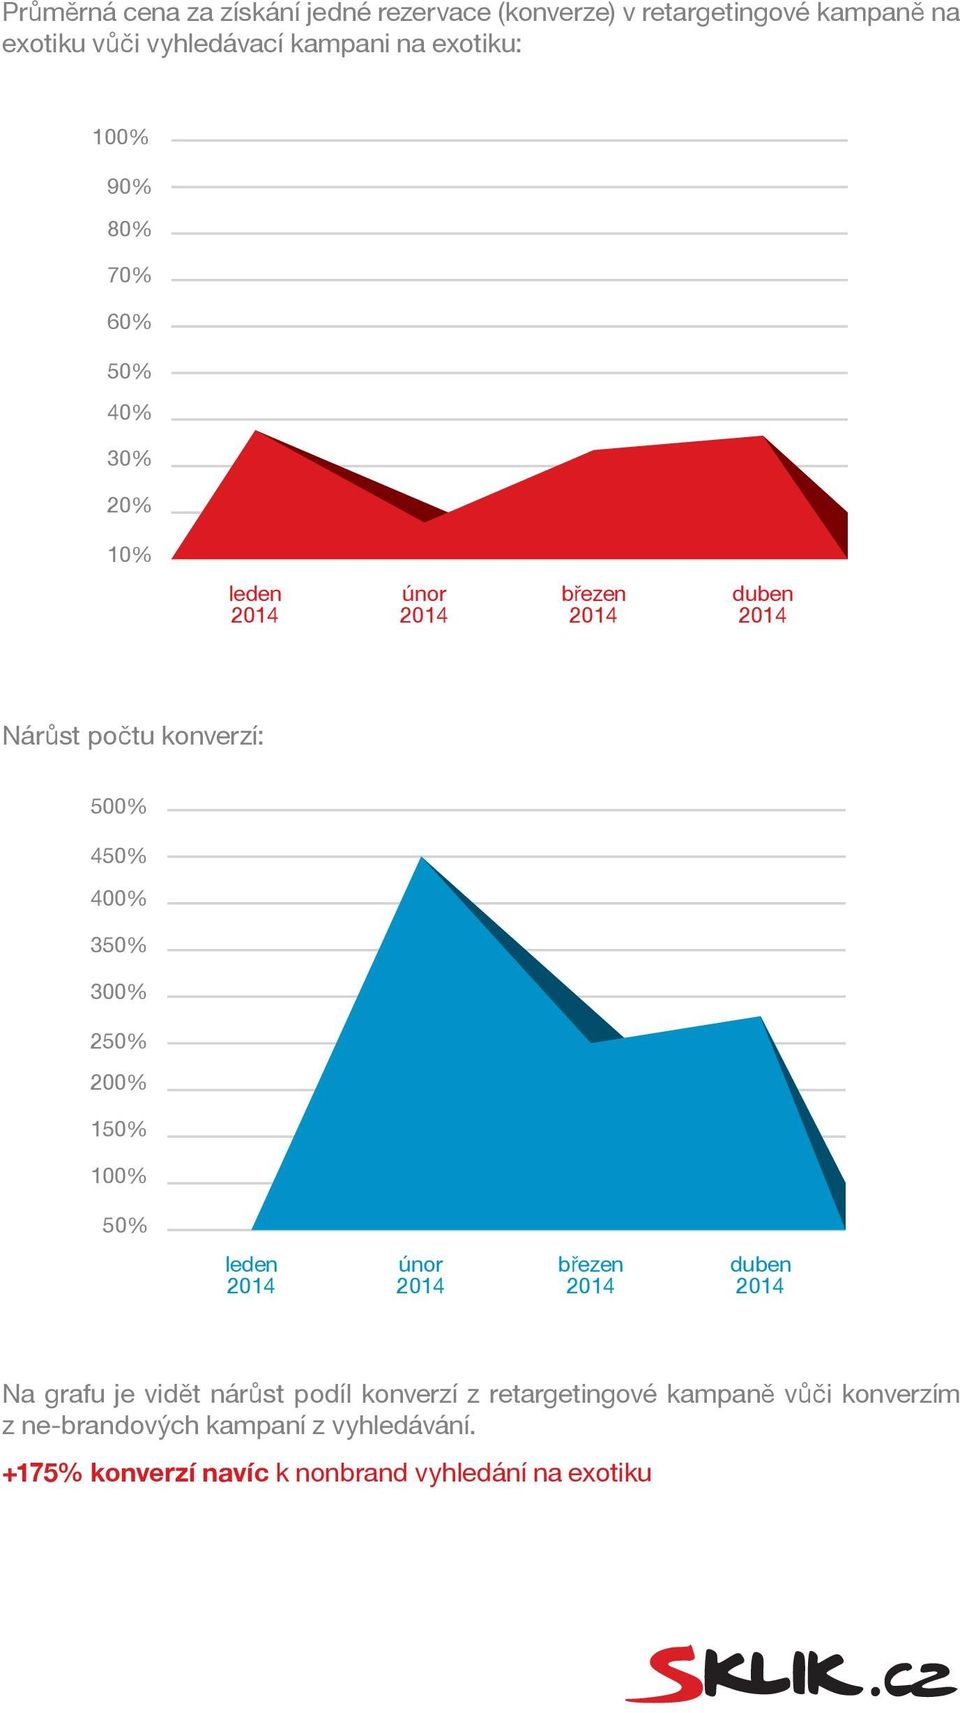 400% 3 300% 2 200% 1 Na grafu je vidět nárůst podíl konverzí z retargetingové kampaně vůči